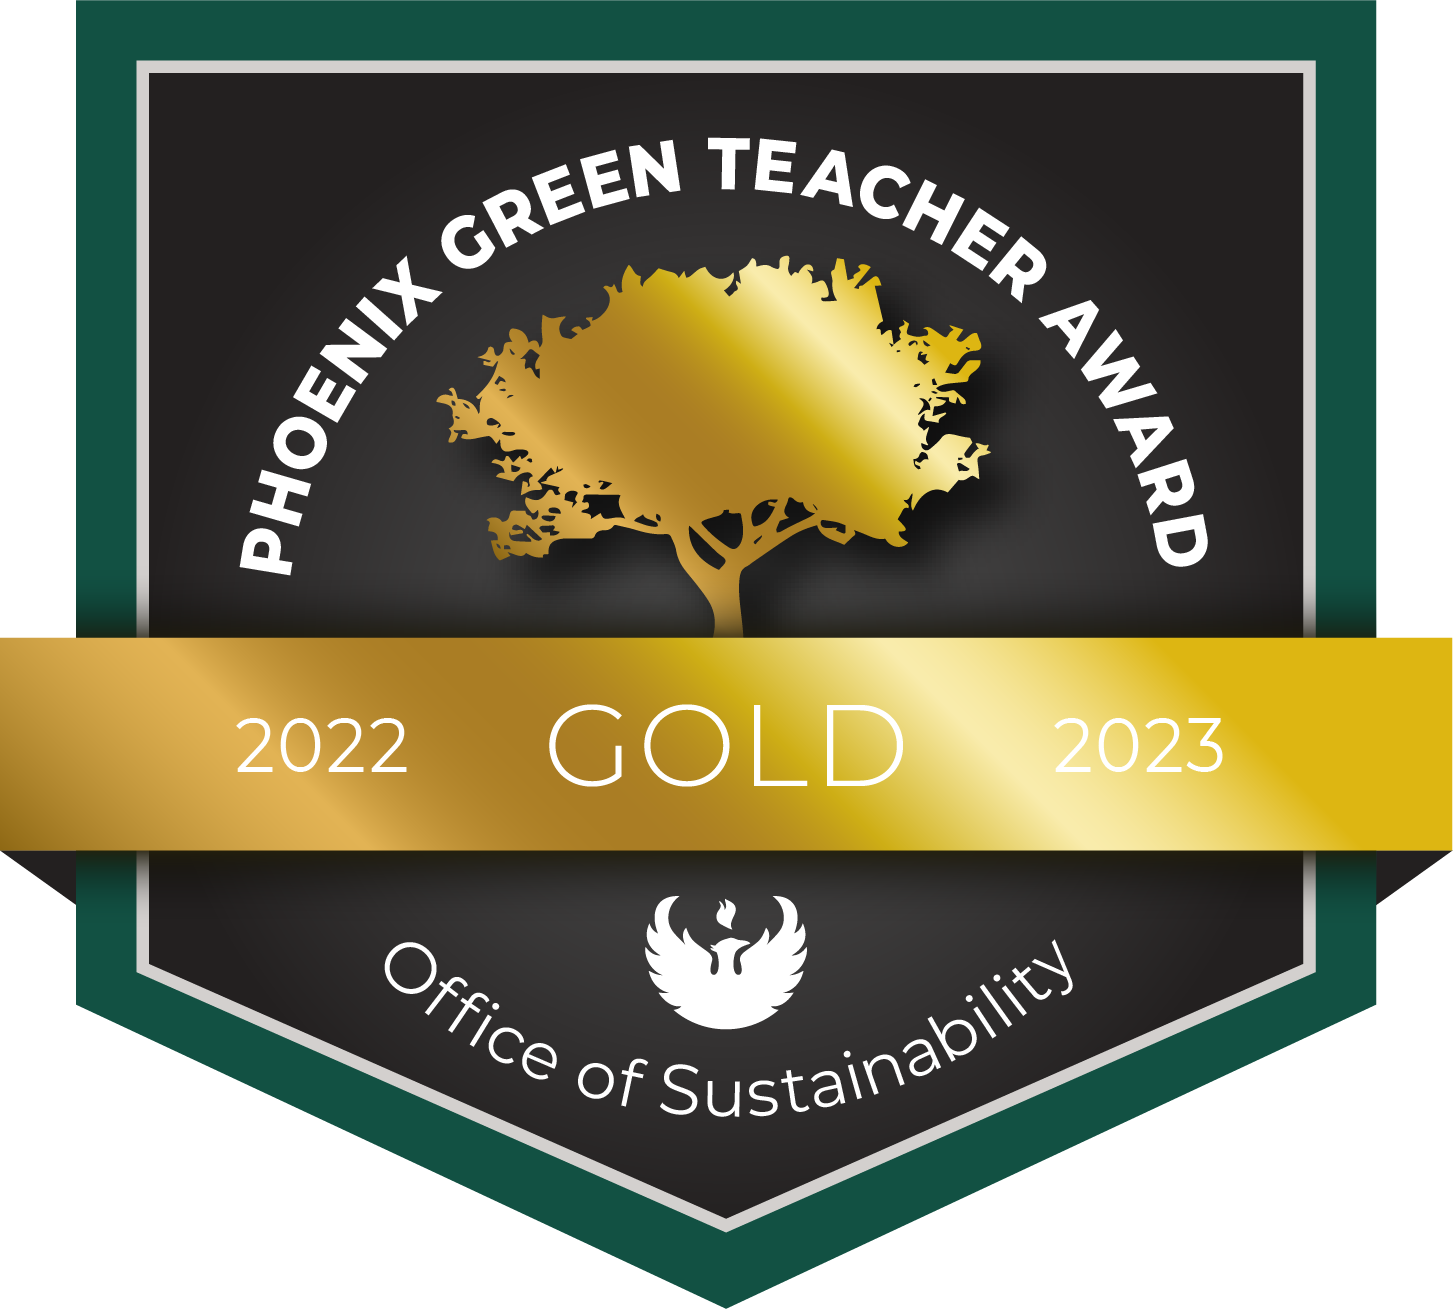 Gold 2022-23 Phoenix Green Teacher Award